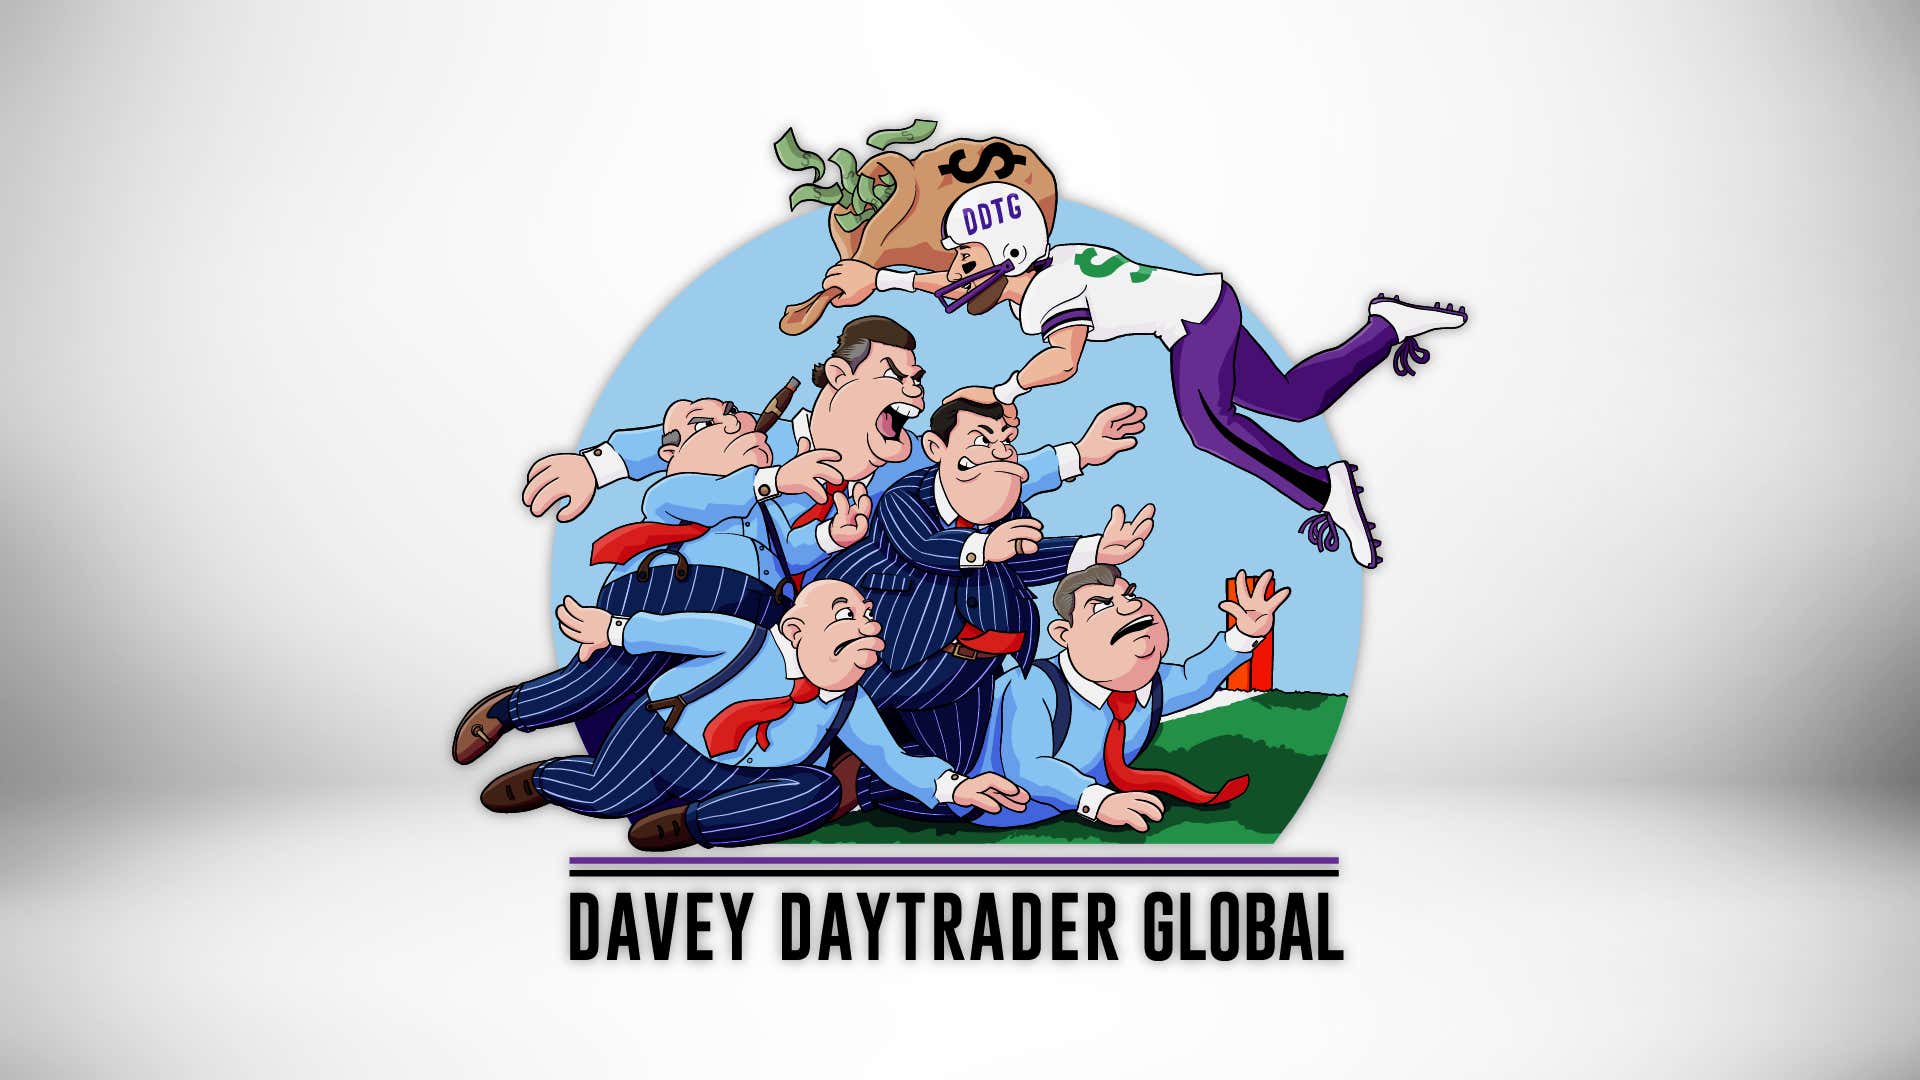 Davey Day Trader – August 24, 2020